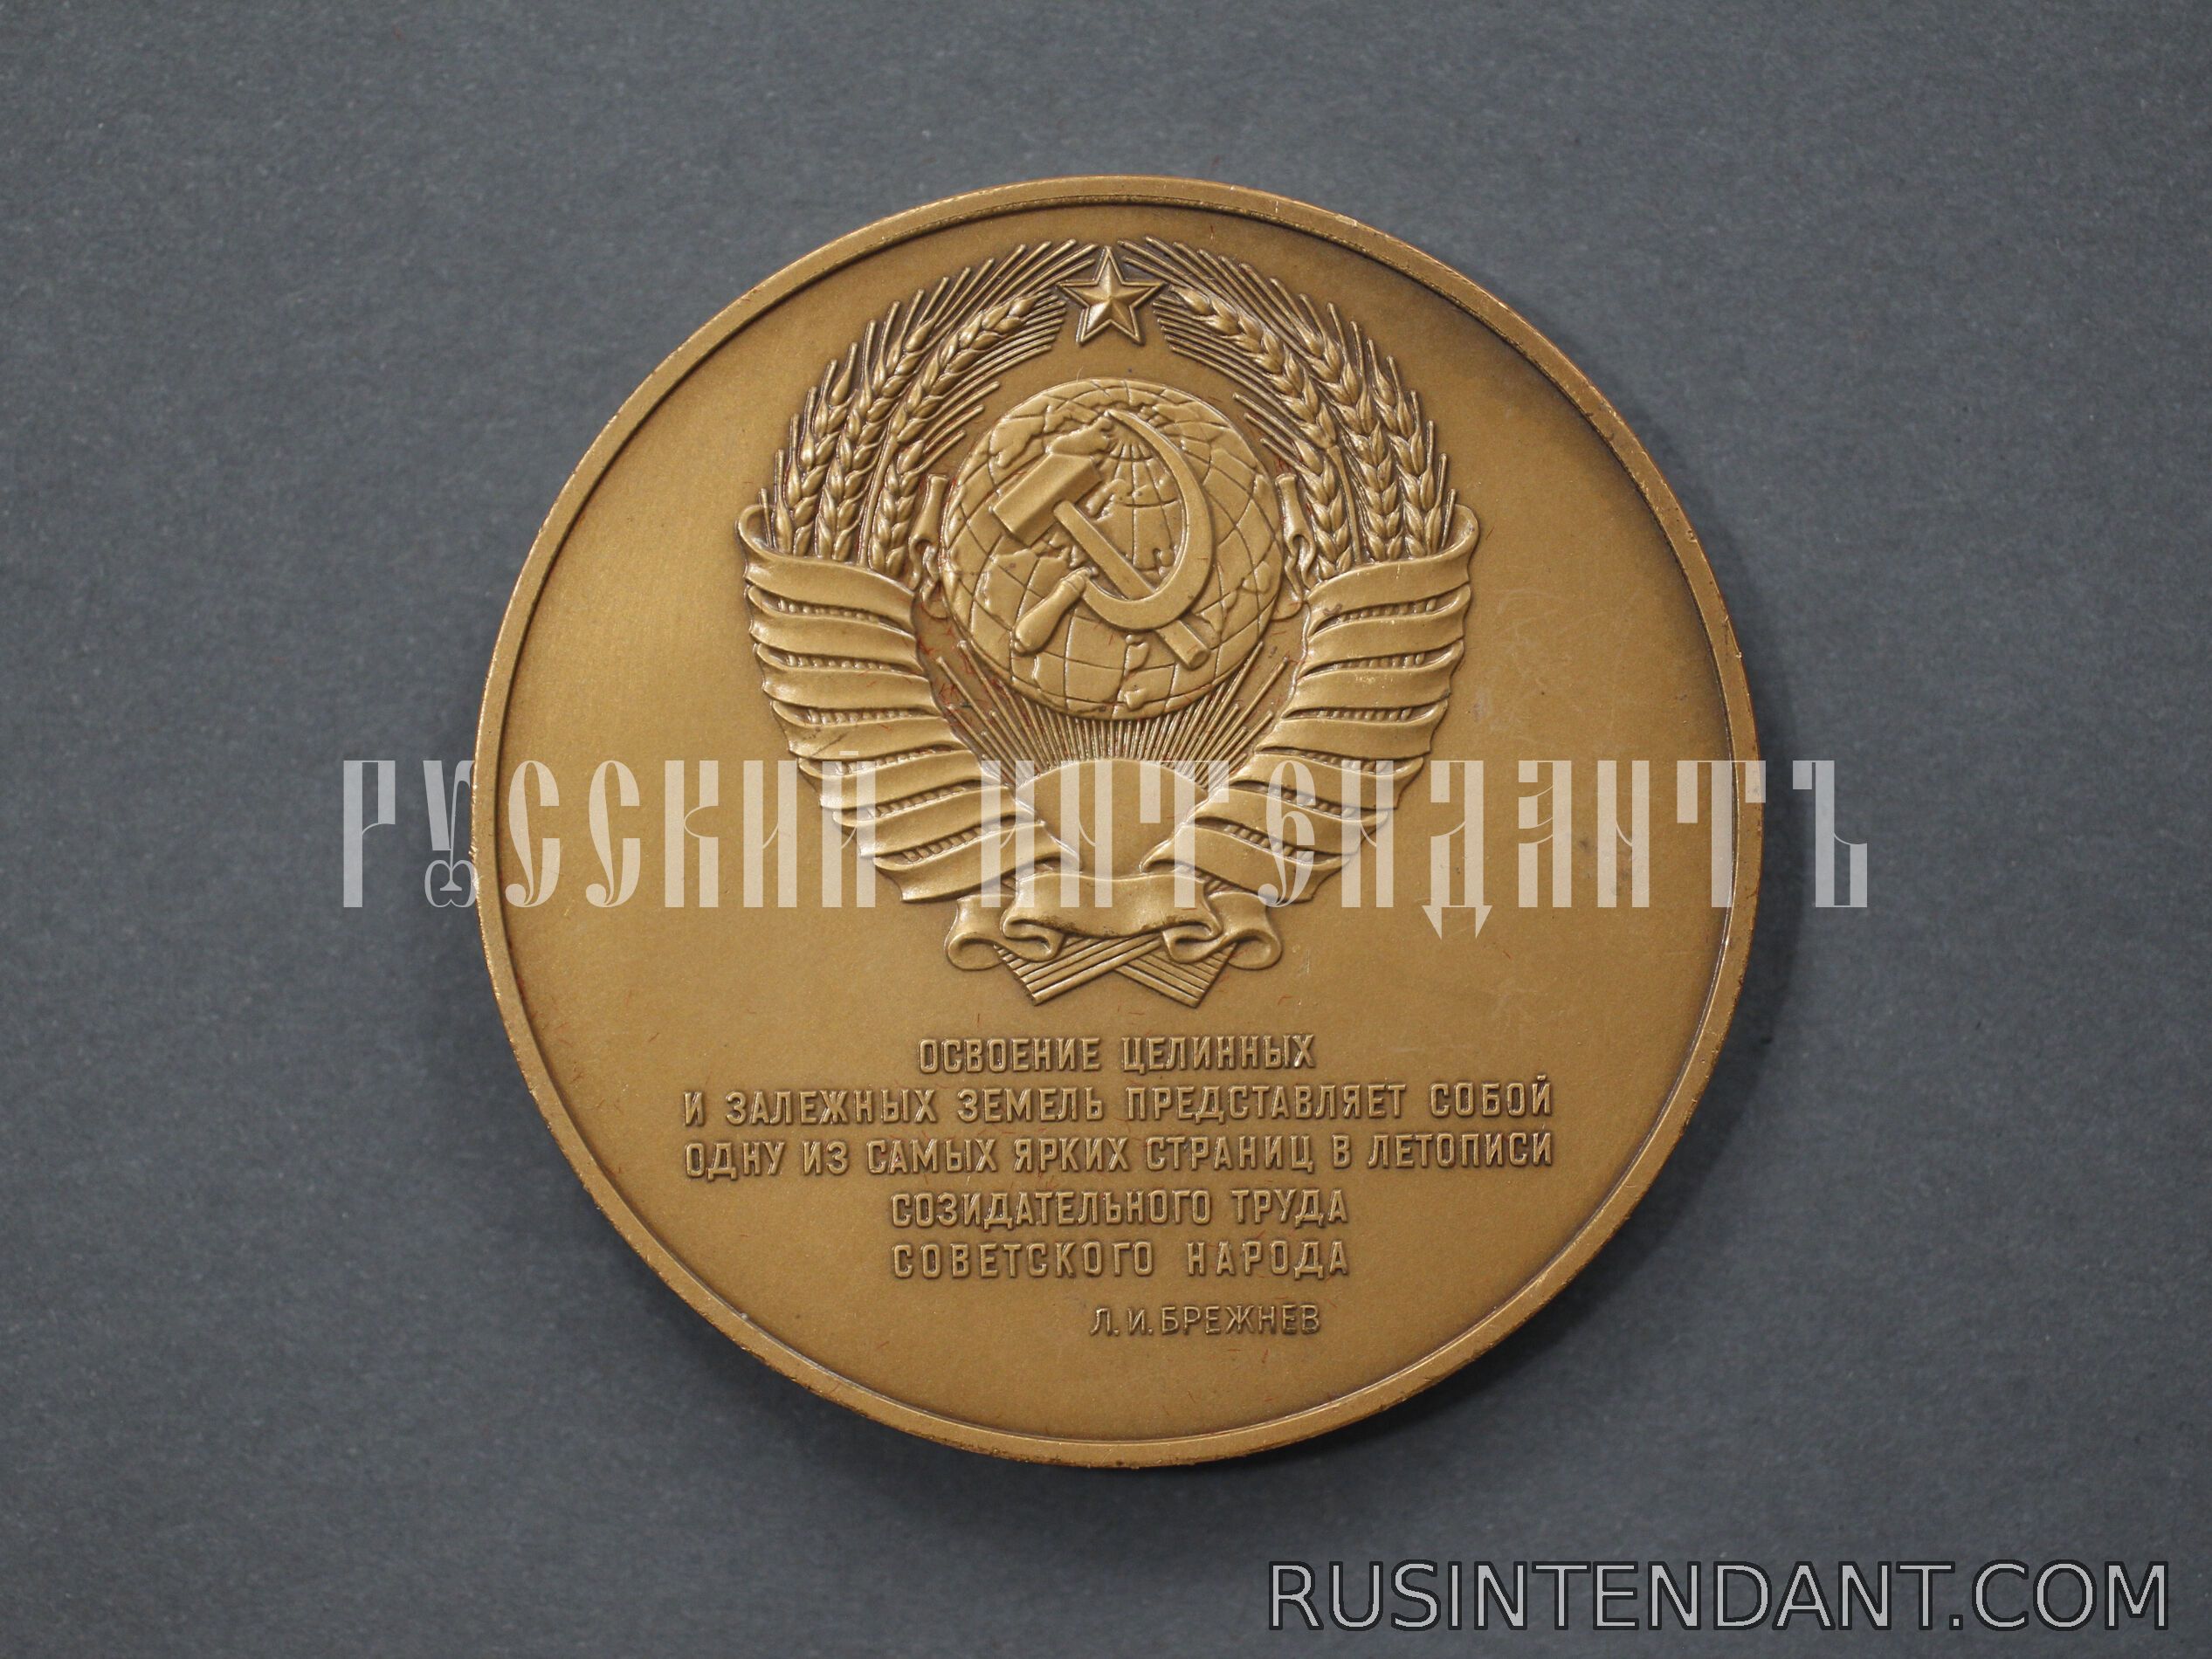 Фото 5: Настольная медаль «В ознаменование 25-летия освоения целинных и залежных земель» 